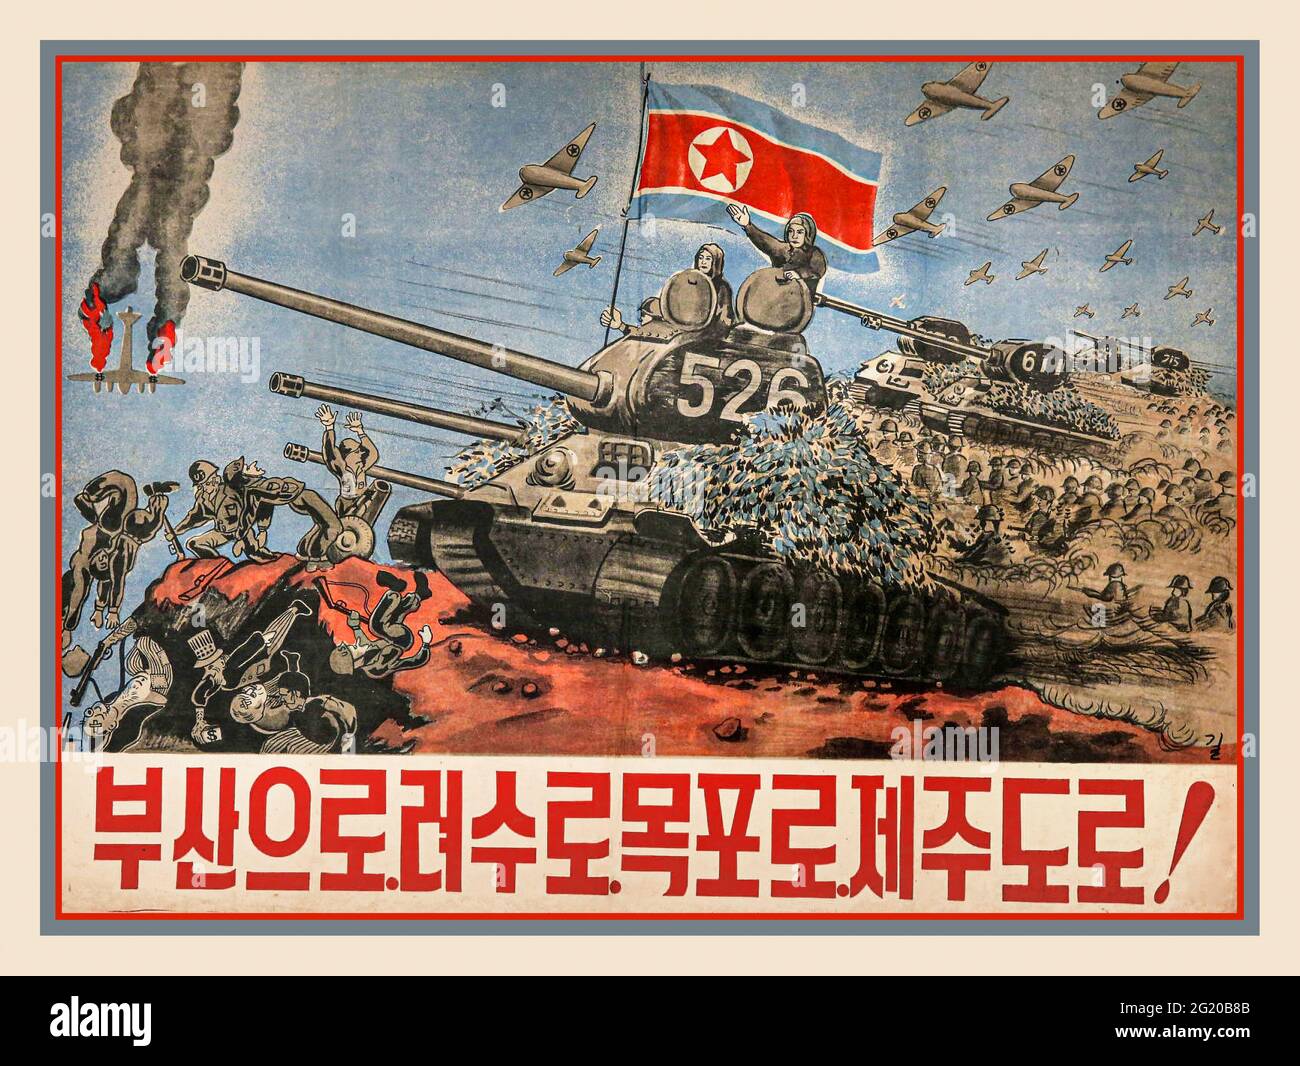 Propaganda de Corea del Norte de 1950 Cartel de la Guerra de Apagamiento de los ejércitos imperialistas de la guerra de la Península Coreana de EE.UU. 1950-1953. La Guerra de Corea fue una guerra entre Corea del Norte, con el apoyo militar de China y la Unión Soviética, y Corea del Sur, respaldada por personal de las Naciones Unidas EE.UU. La guerra comenzó el 25 de junio de 1950 cuando Corea del Norte invadió Corea del Sur tras enfrentamientos a lo largo de la frontera e insurrecciones en el sur. Foto de stock